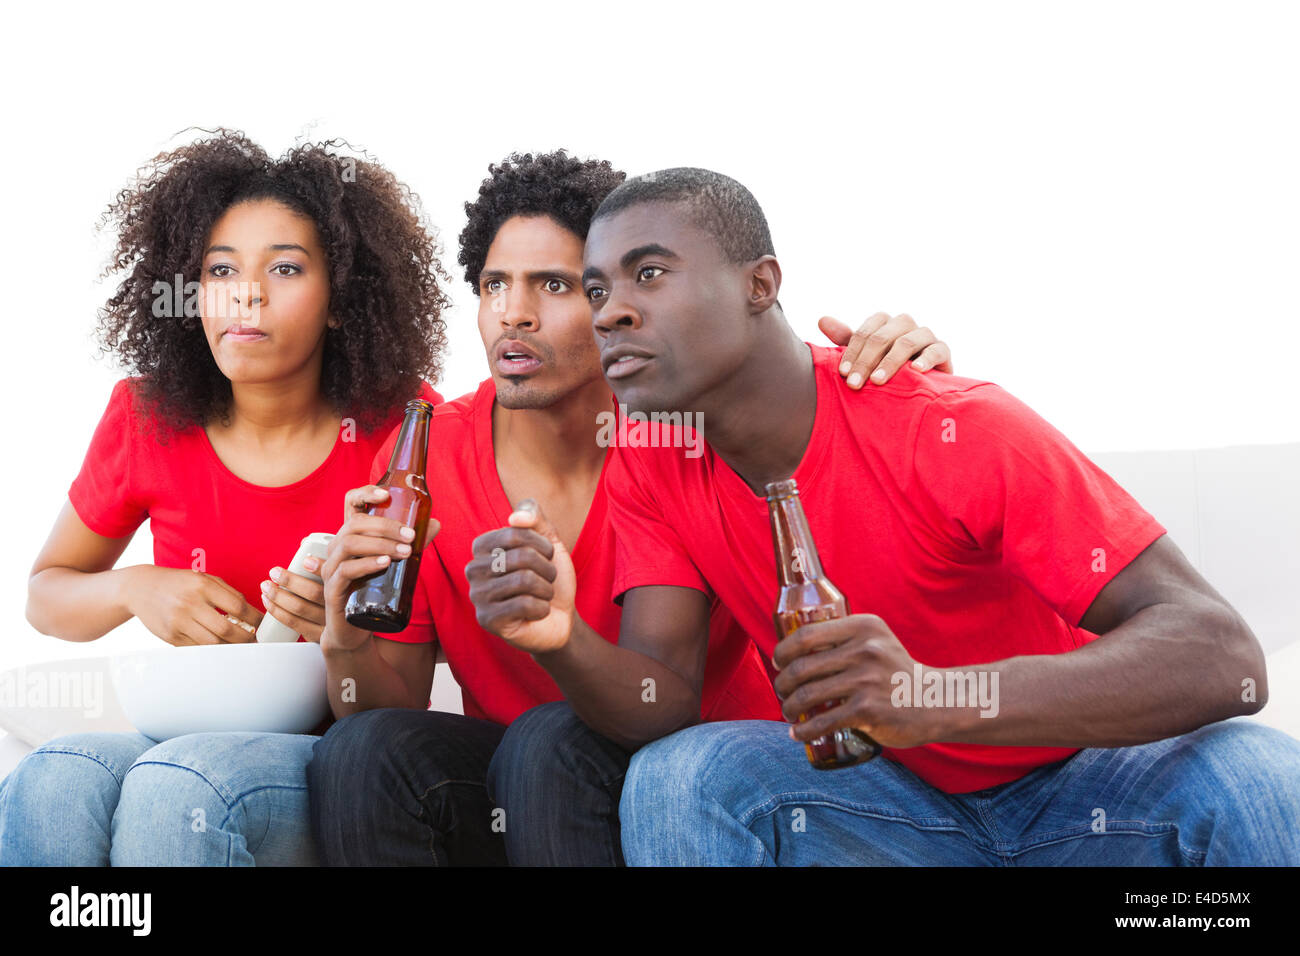 Nervös Fußballfans in rot auf dem sofa Stockfoto